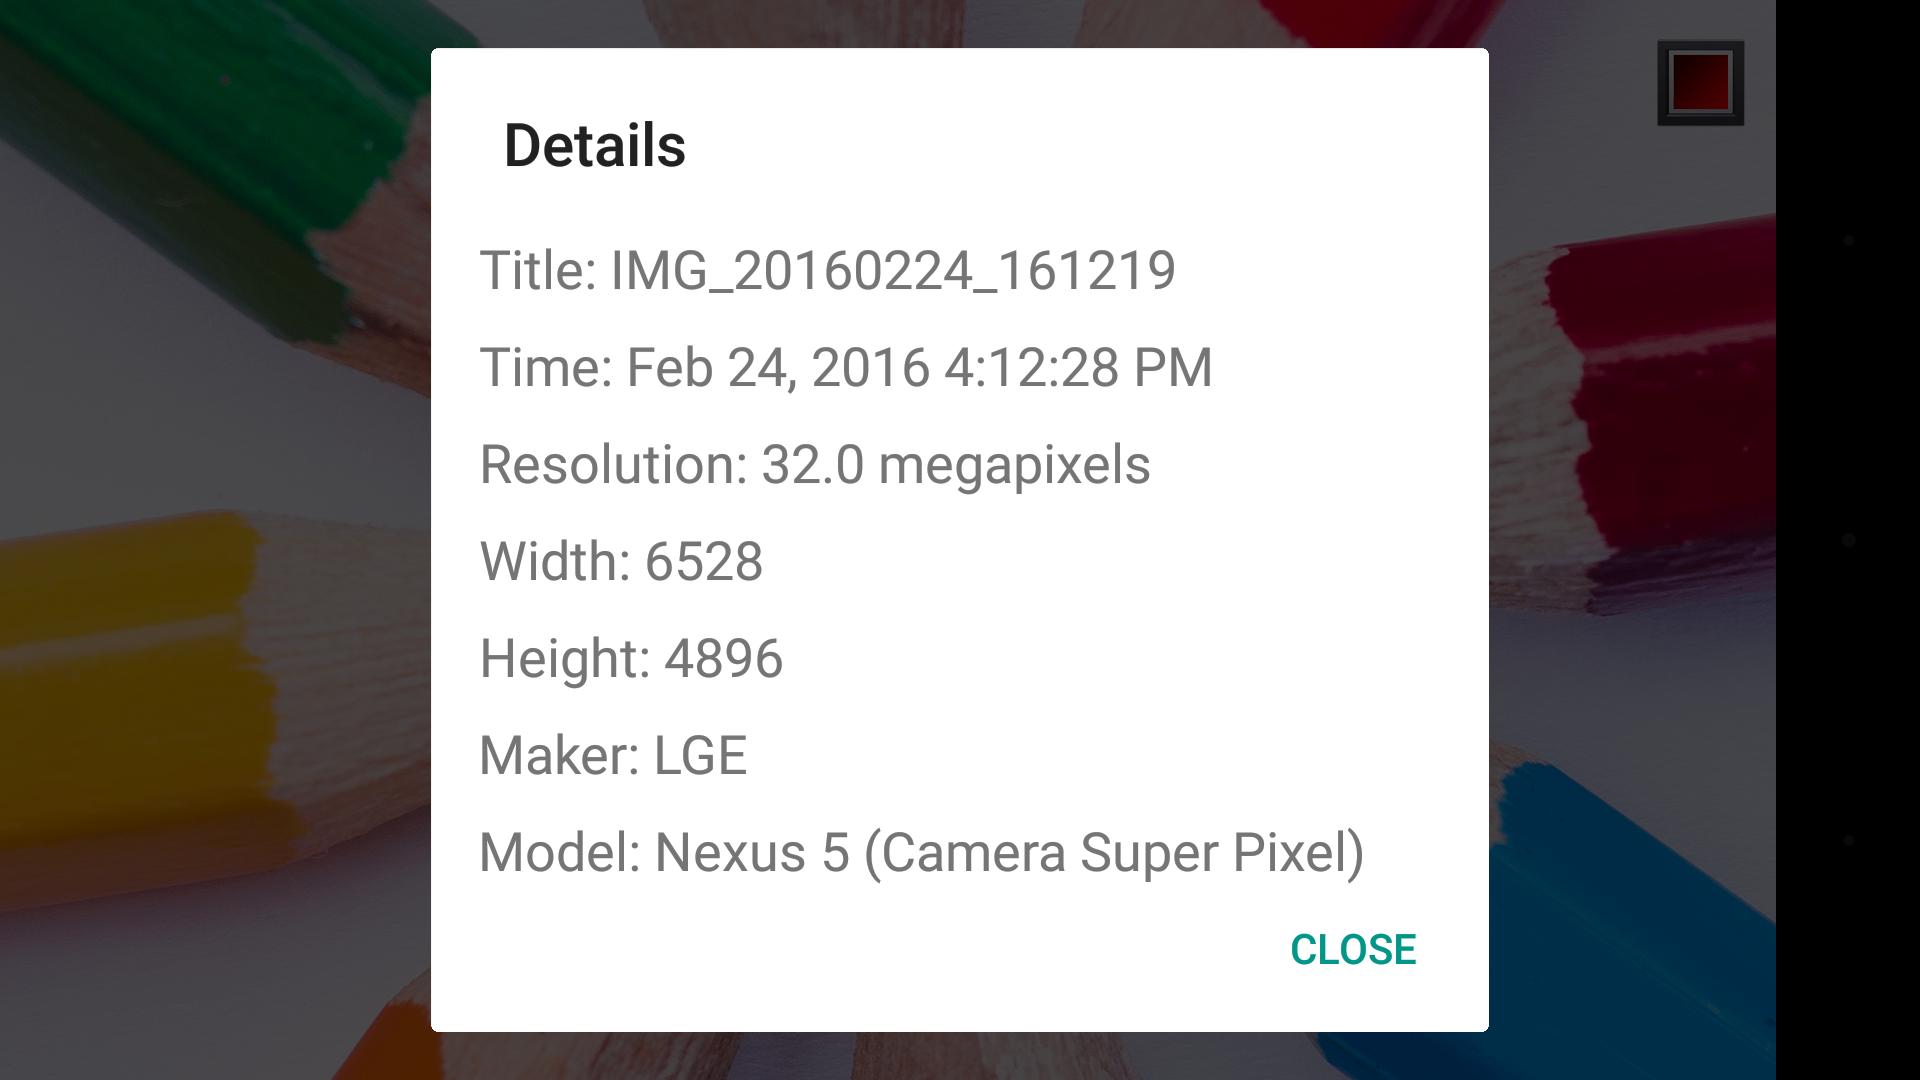 Camera Super Pixel